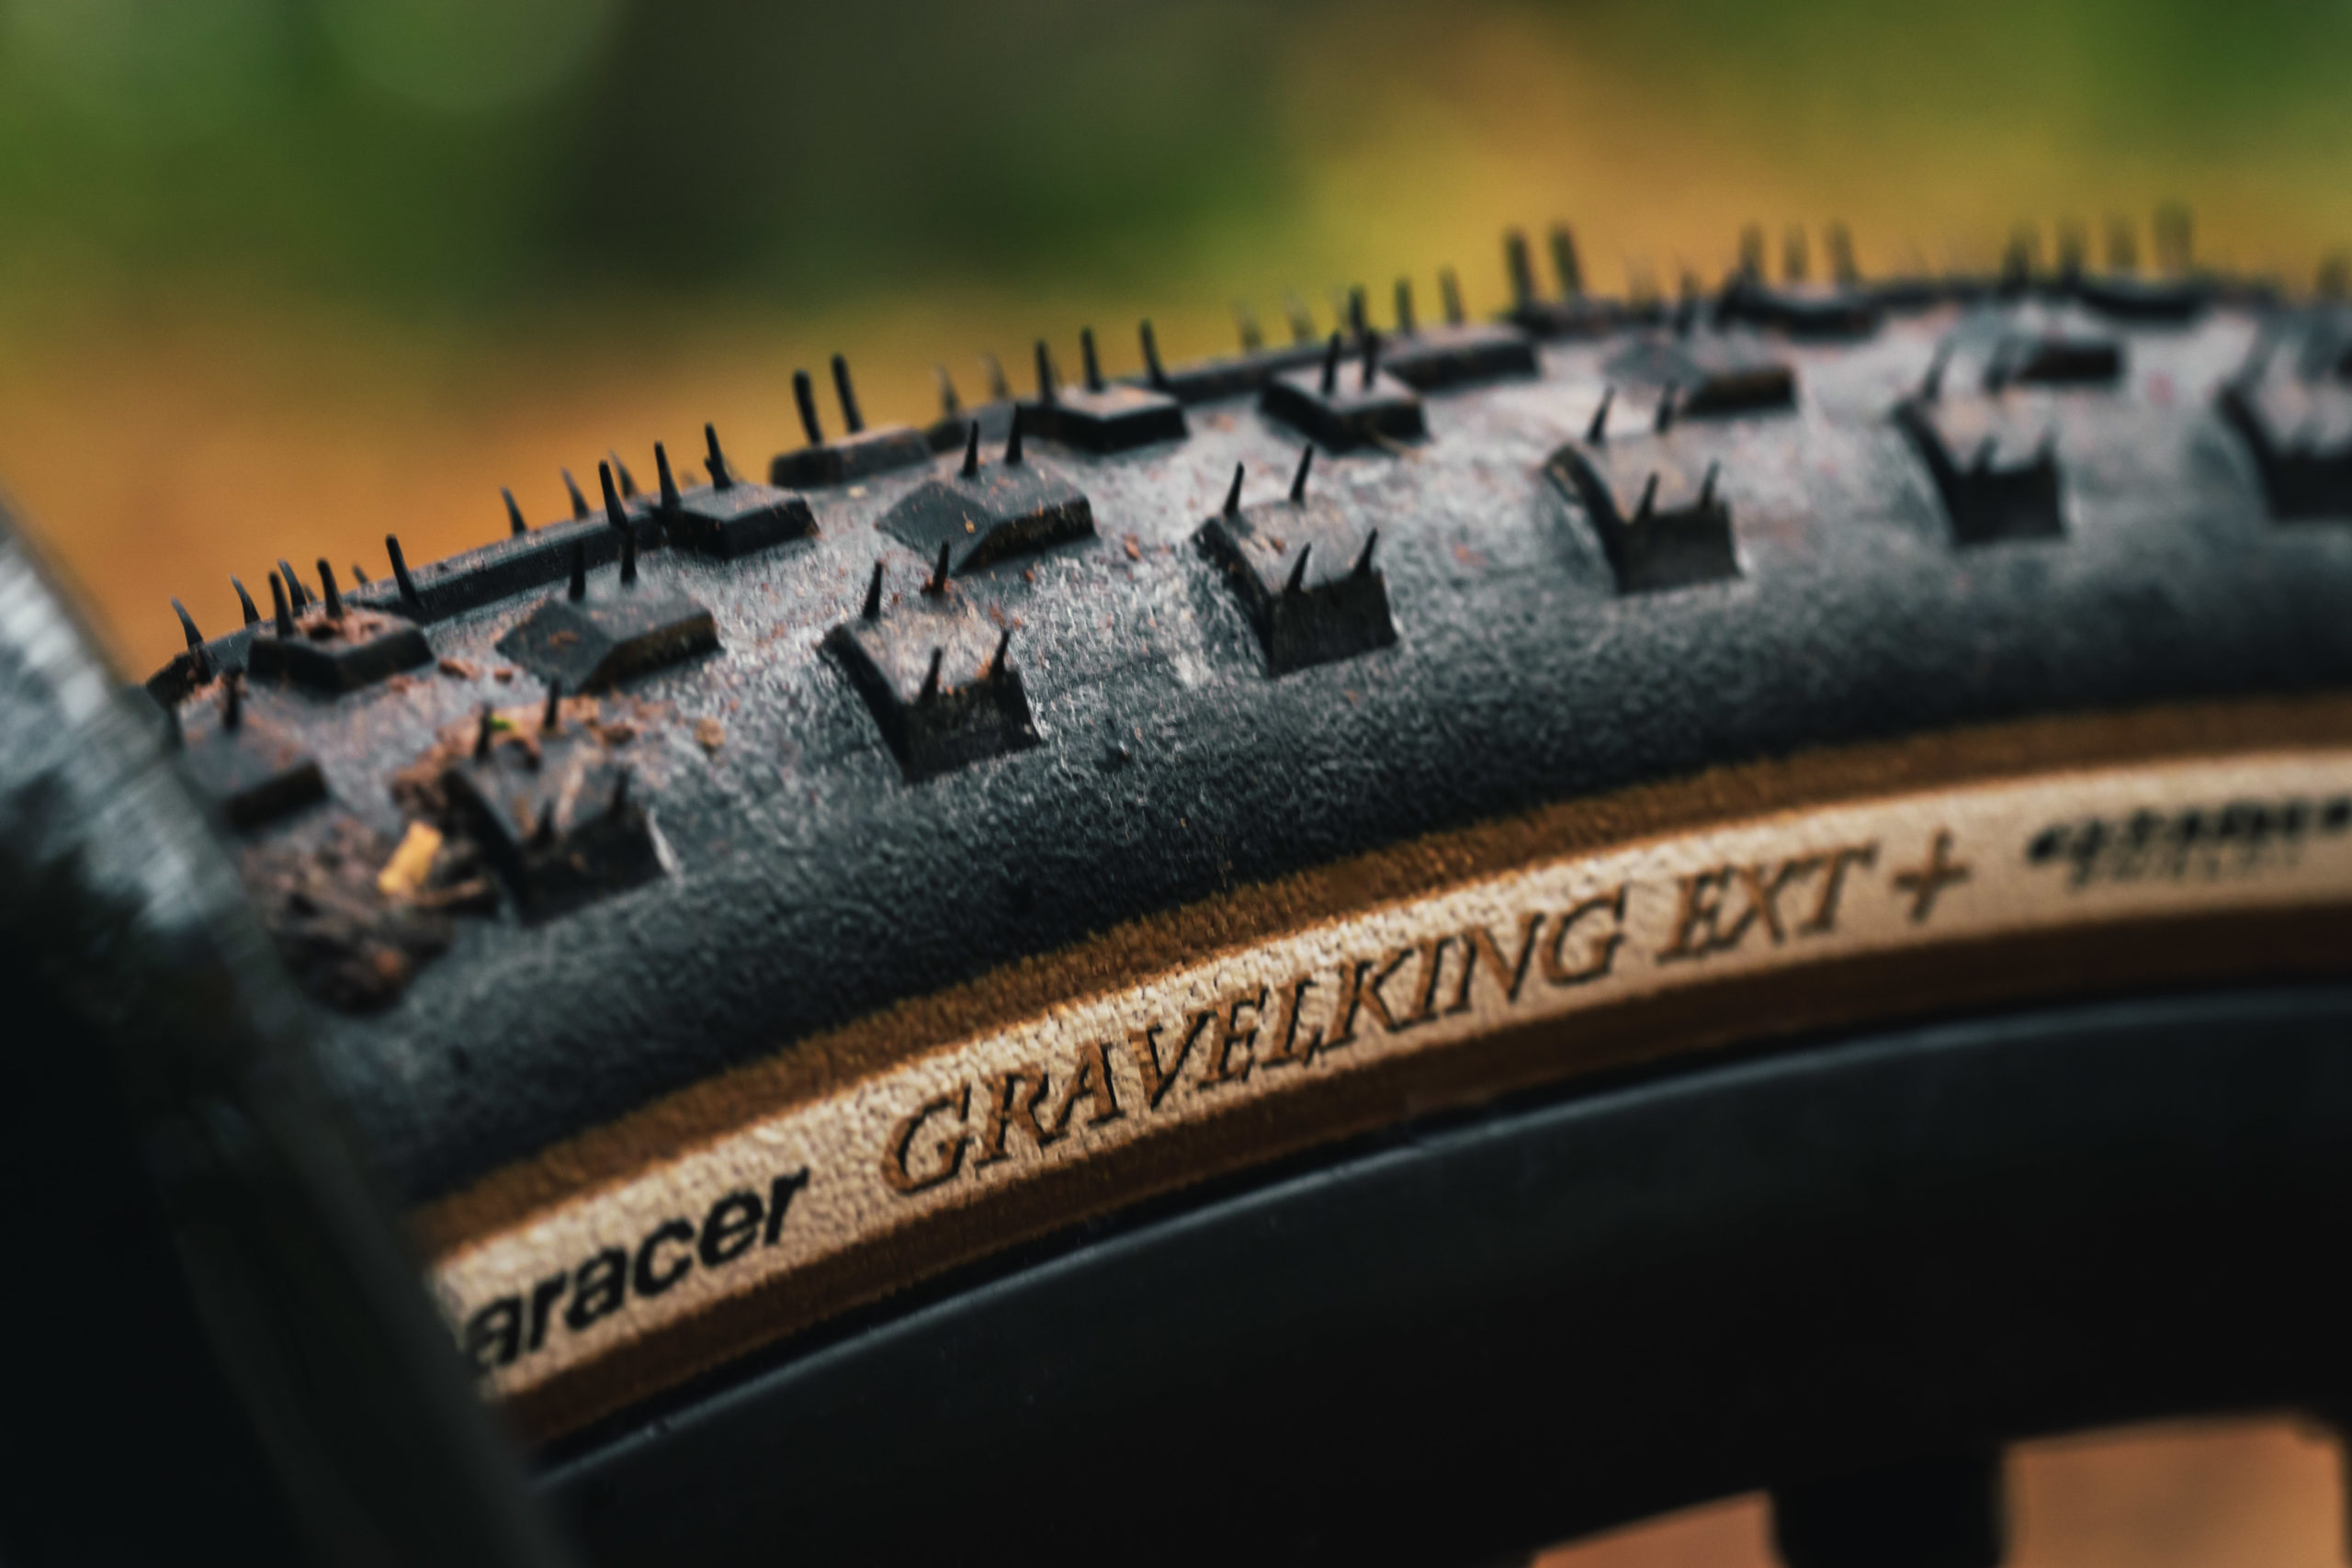 Panaracer GravelKing EXT Plus tyre